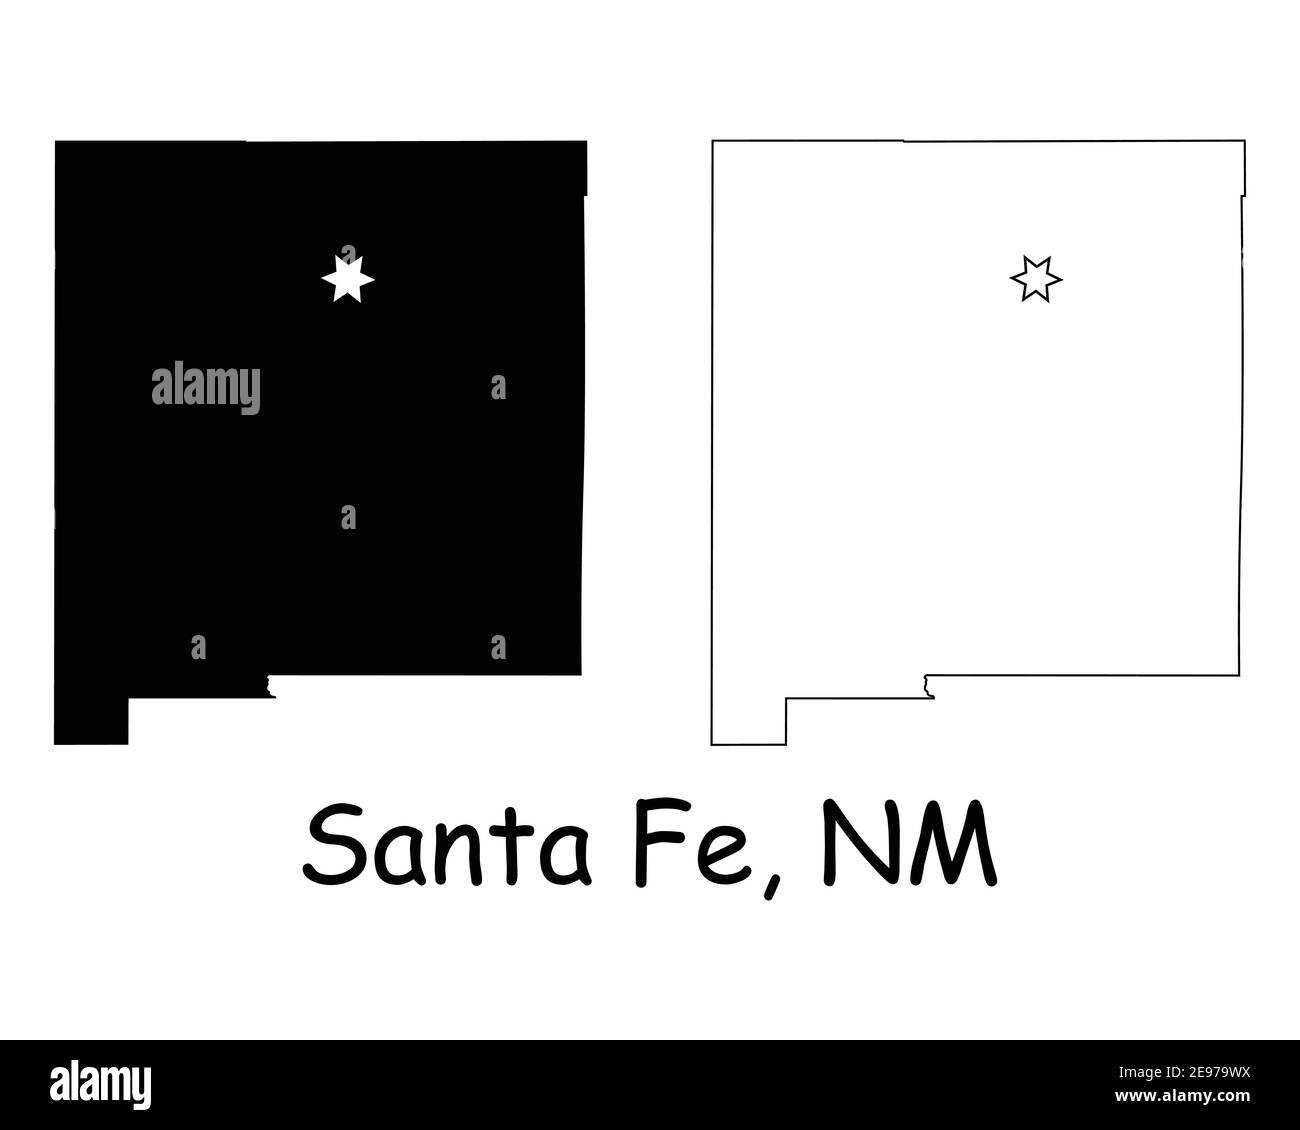 New Mexico NM State Map USA mit Capital City Star in Santa Fe. Schwarze Silhouette und Umriss isoliert auf weißem Hintergrund. EPS-Vektor Stock Vektor